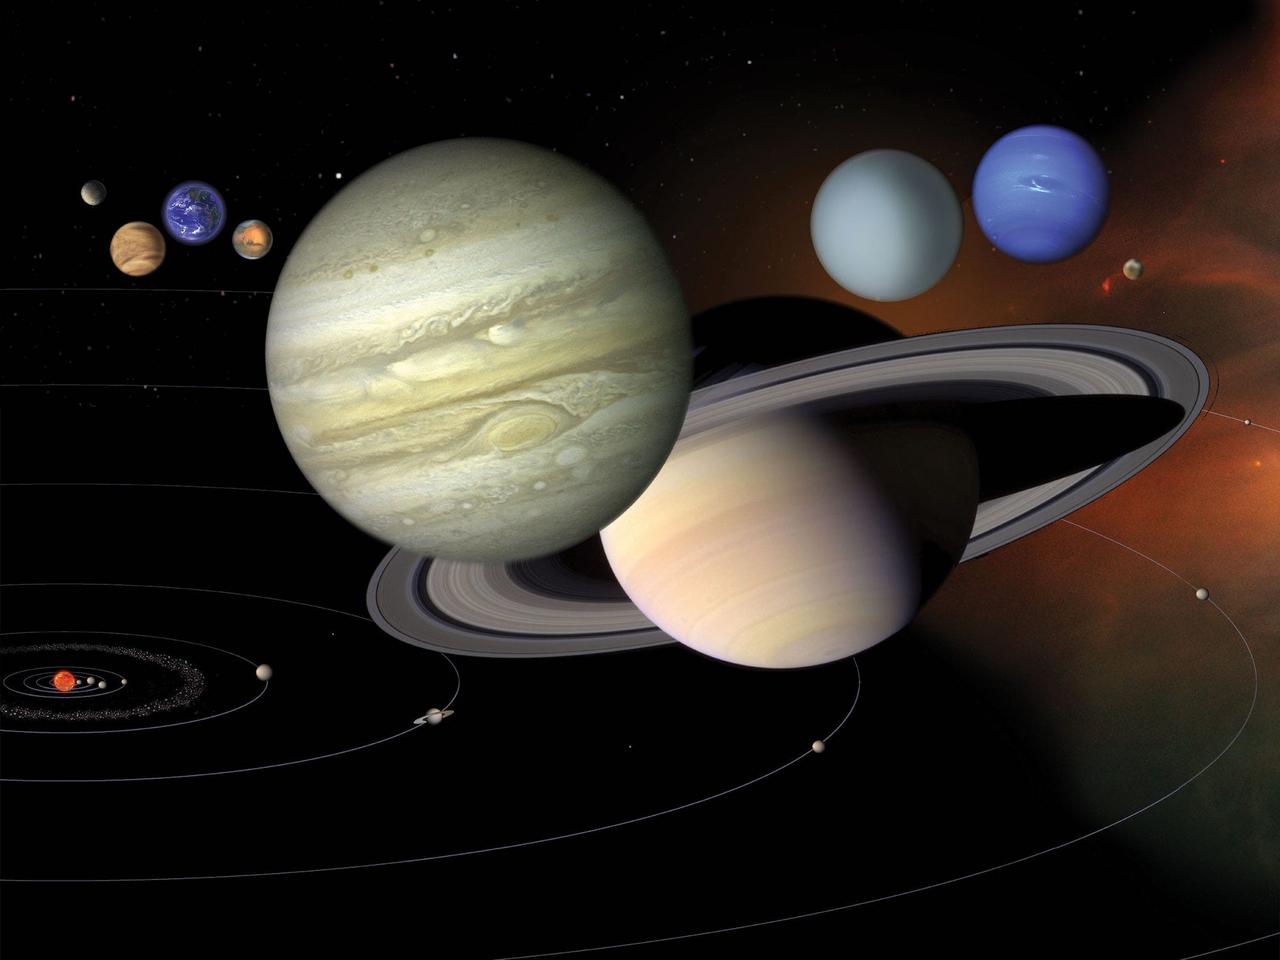 上の惑星はサイズ感を表し、その下の軌道上の惑星は距離感を表している。